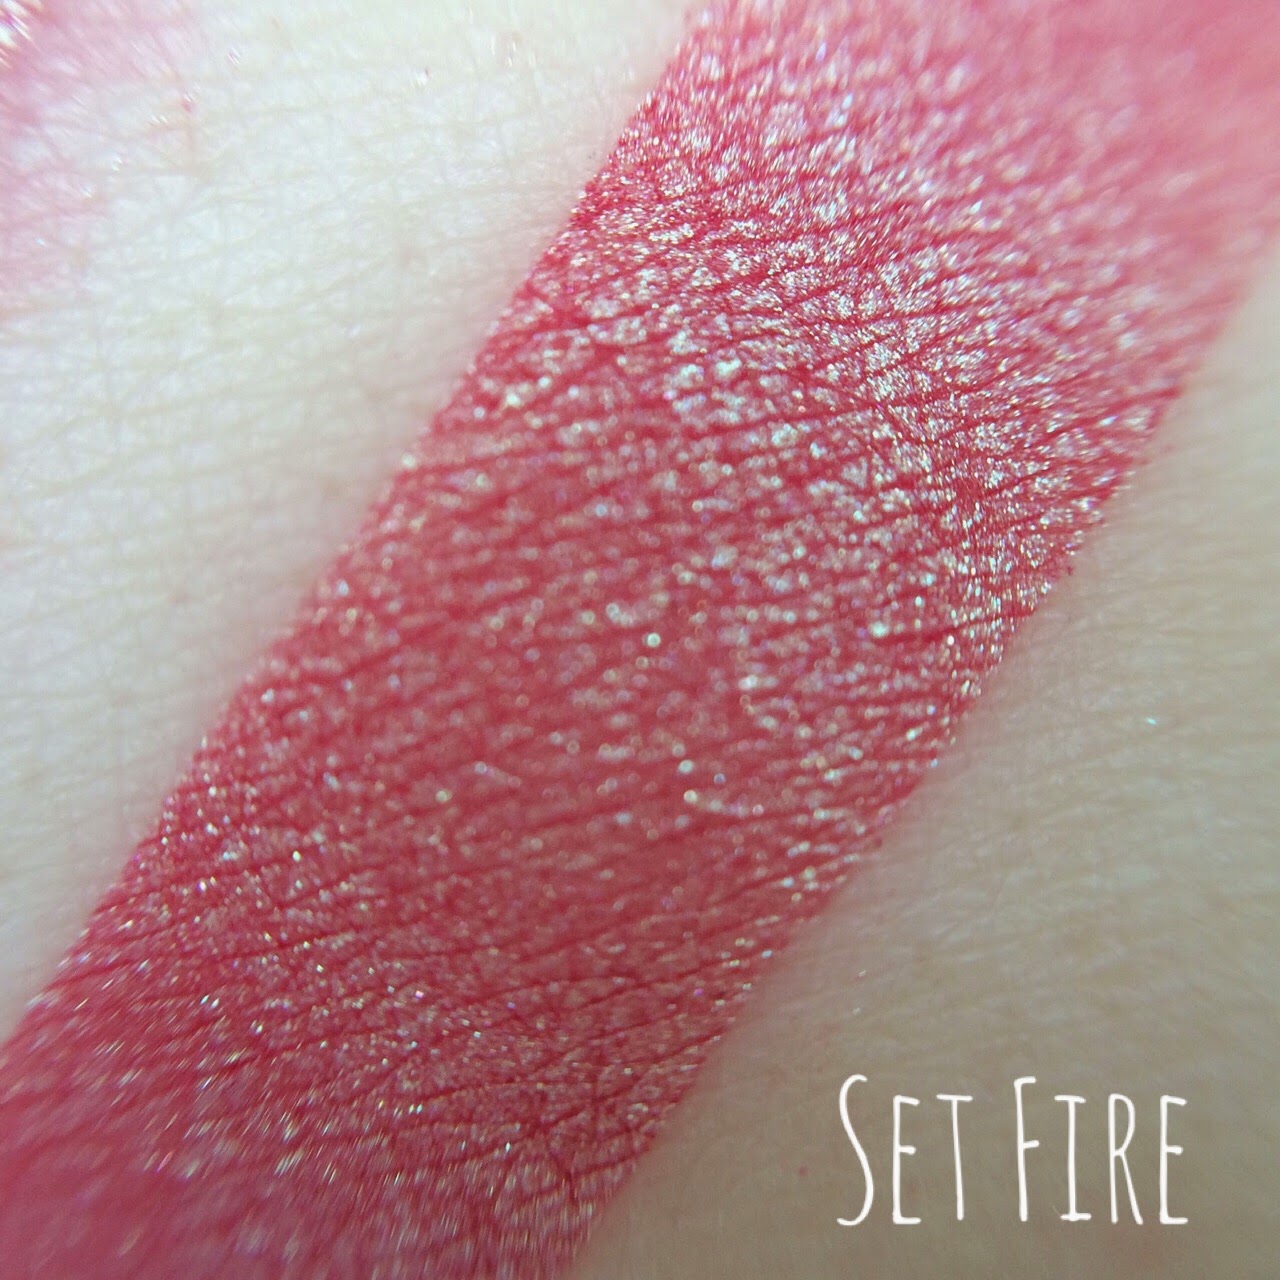 Set Fire Pratchett Inspired makeup